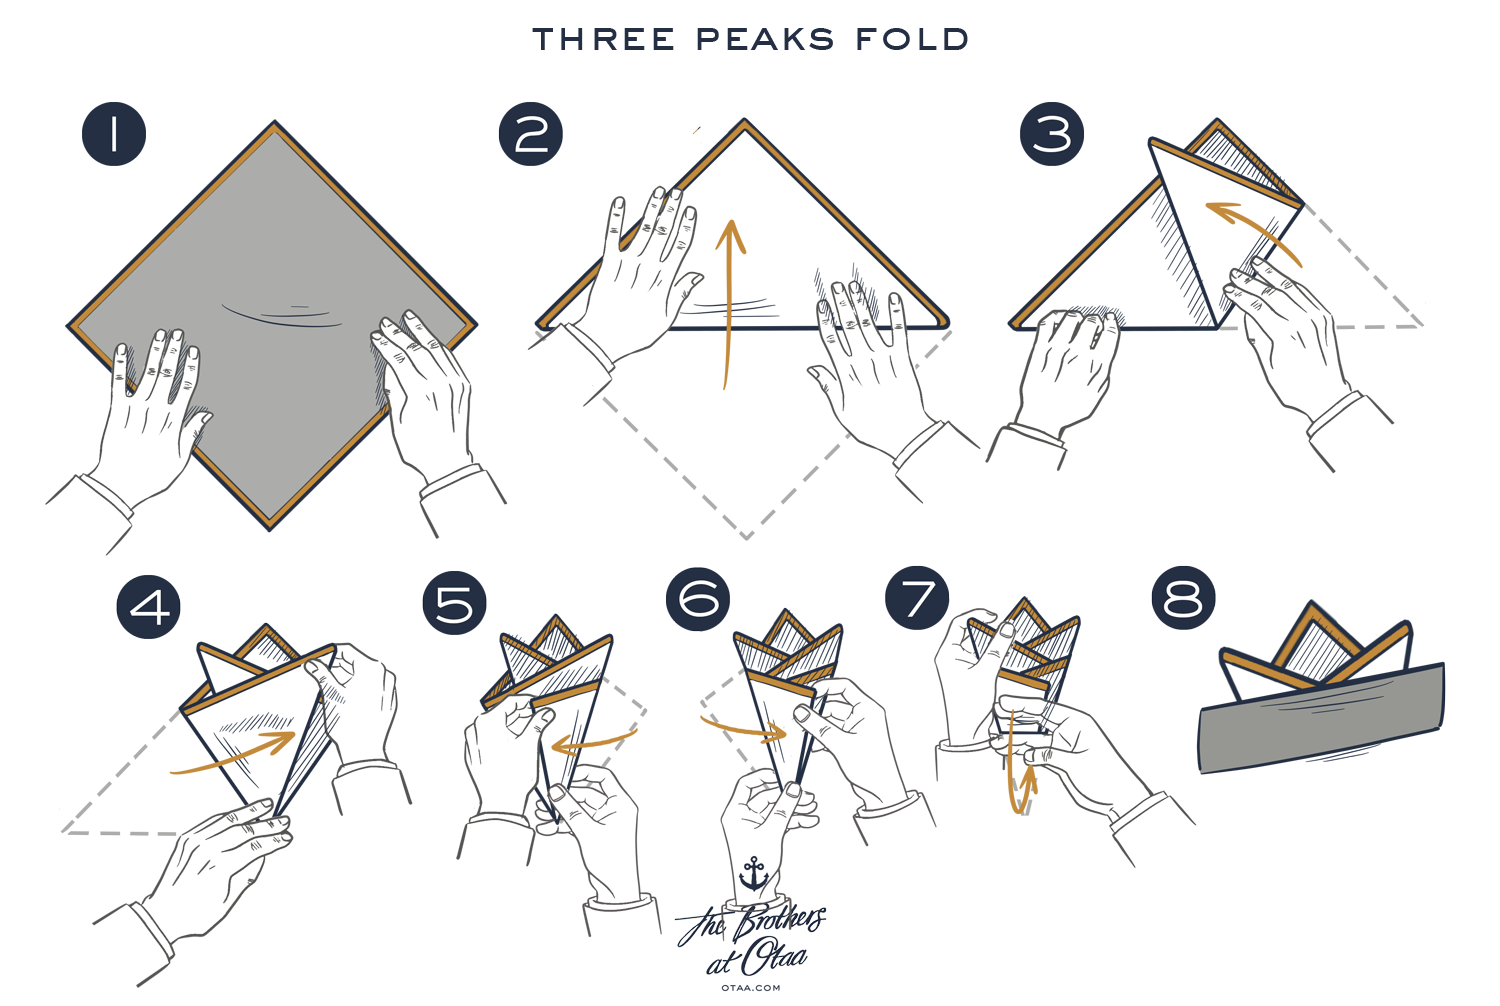 How To Fold a Three Peak Fold - steps